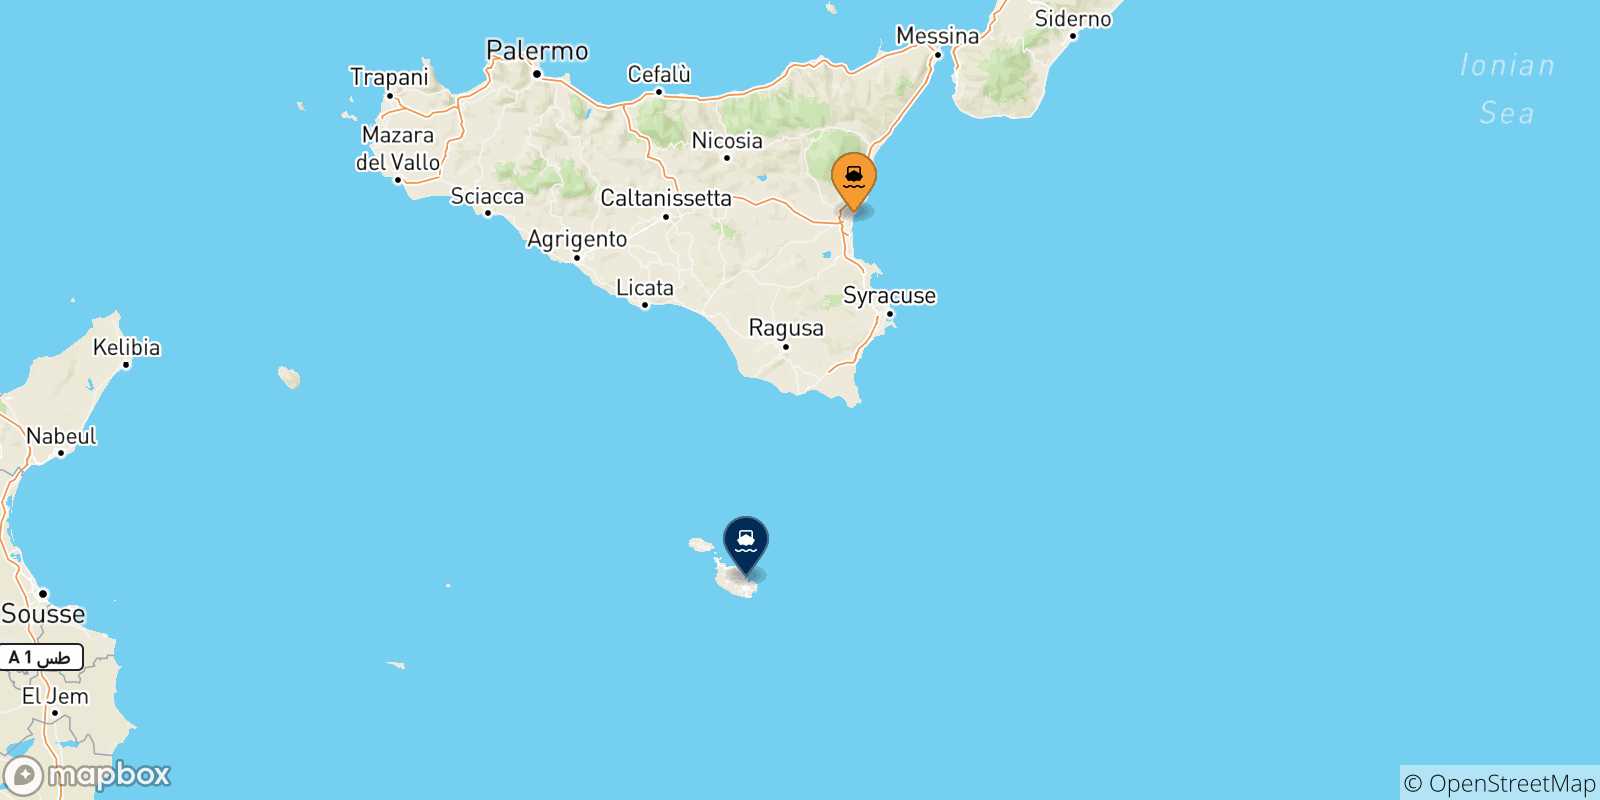 Mappa delle possibili rotte tra Catania e Malta